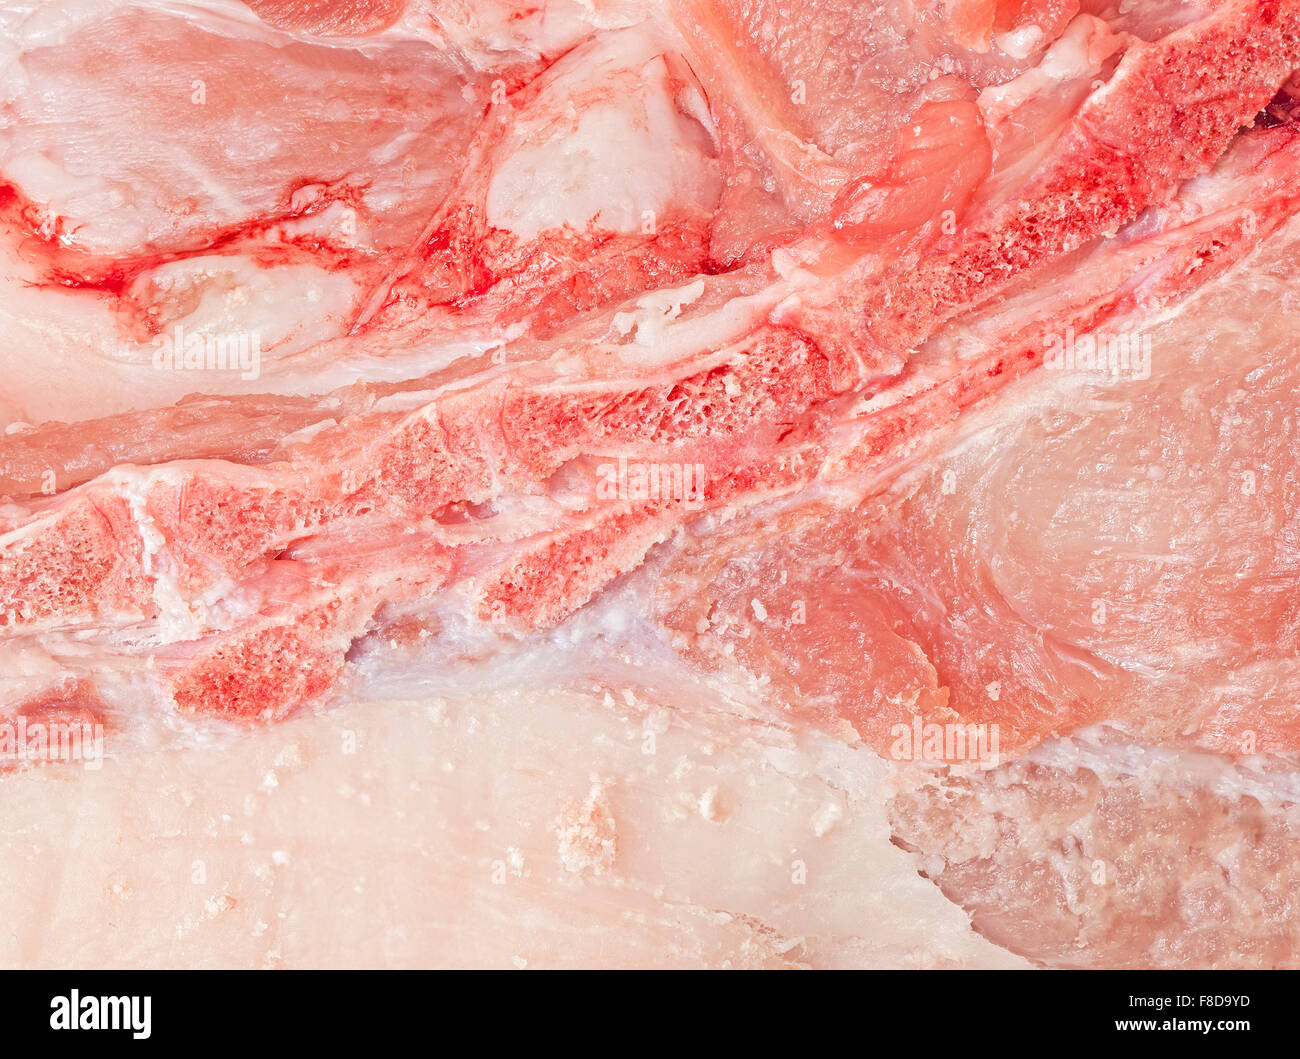 Máximo acercamiento de la imagen de la pierna de cerdo la carne fresca. Foto de stock